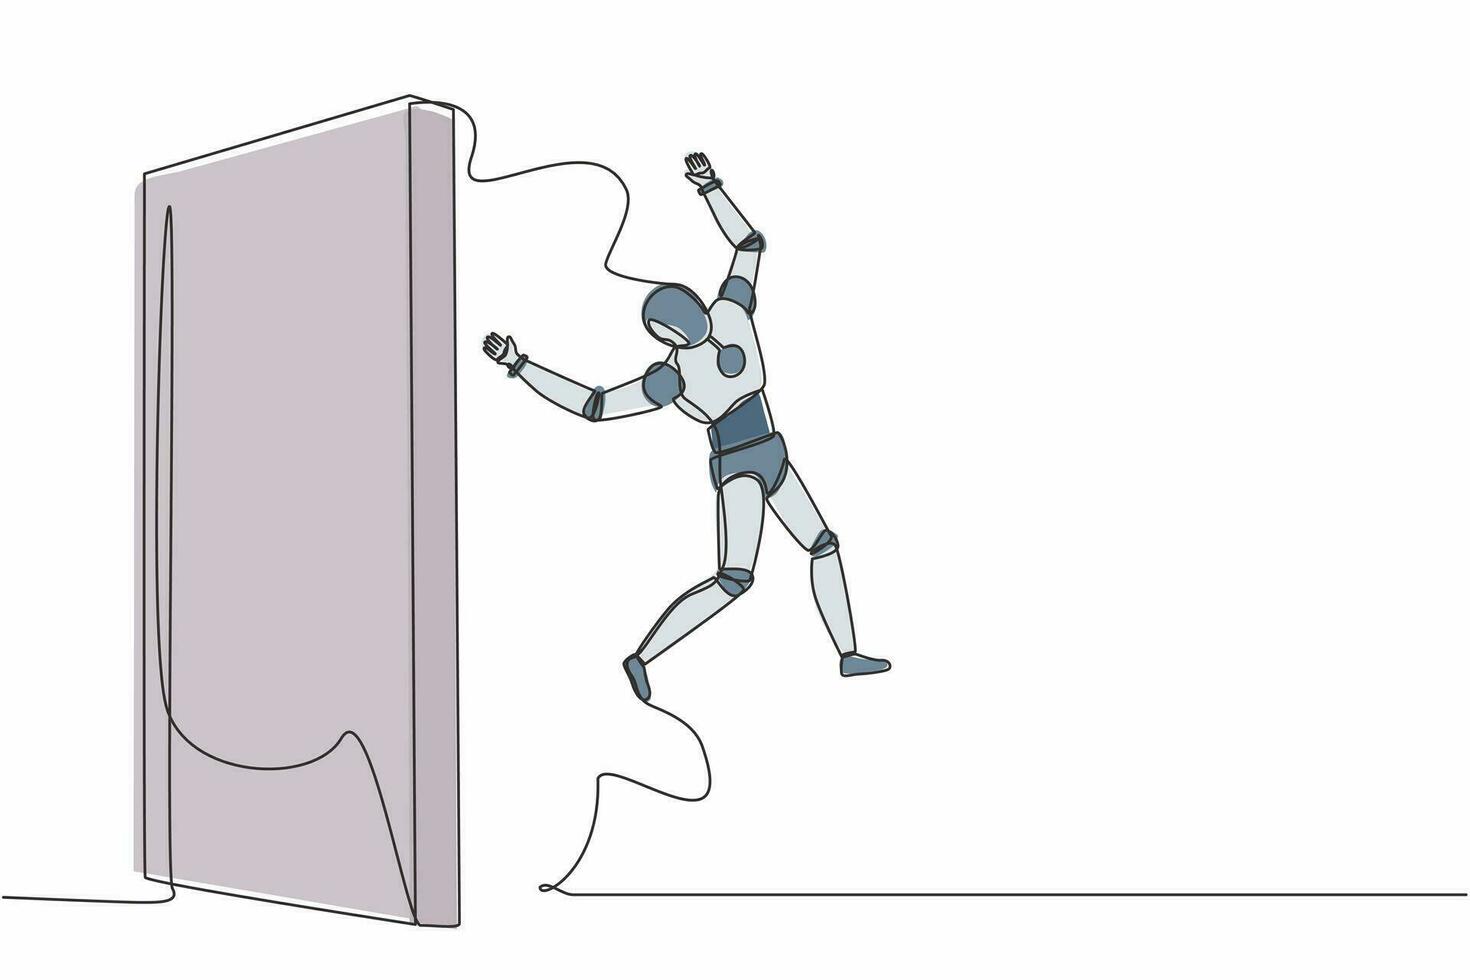 kontinuerlig en rad ritningsrobot lyckades hoppa över väggen. få ny erfarenhet. humanoid robot cybernetisk organism. framtida robotutveckling. enda rad rita design vektorgrafisk illustration vektor